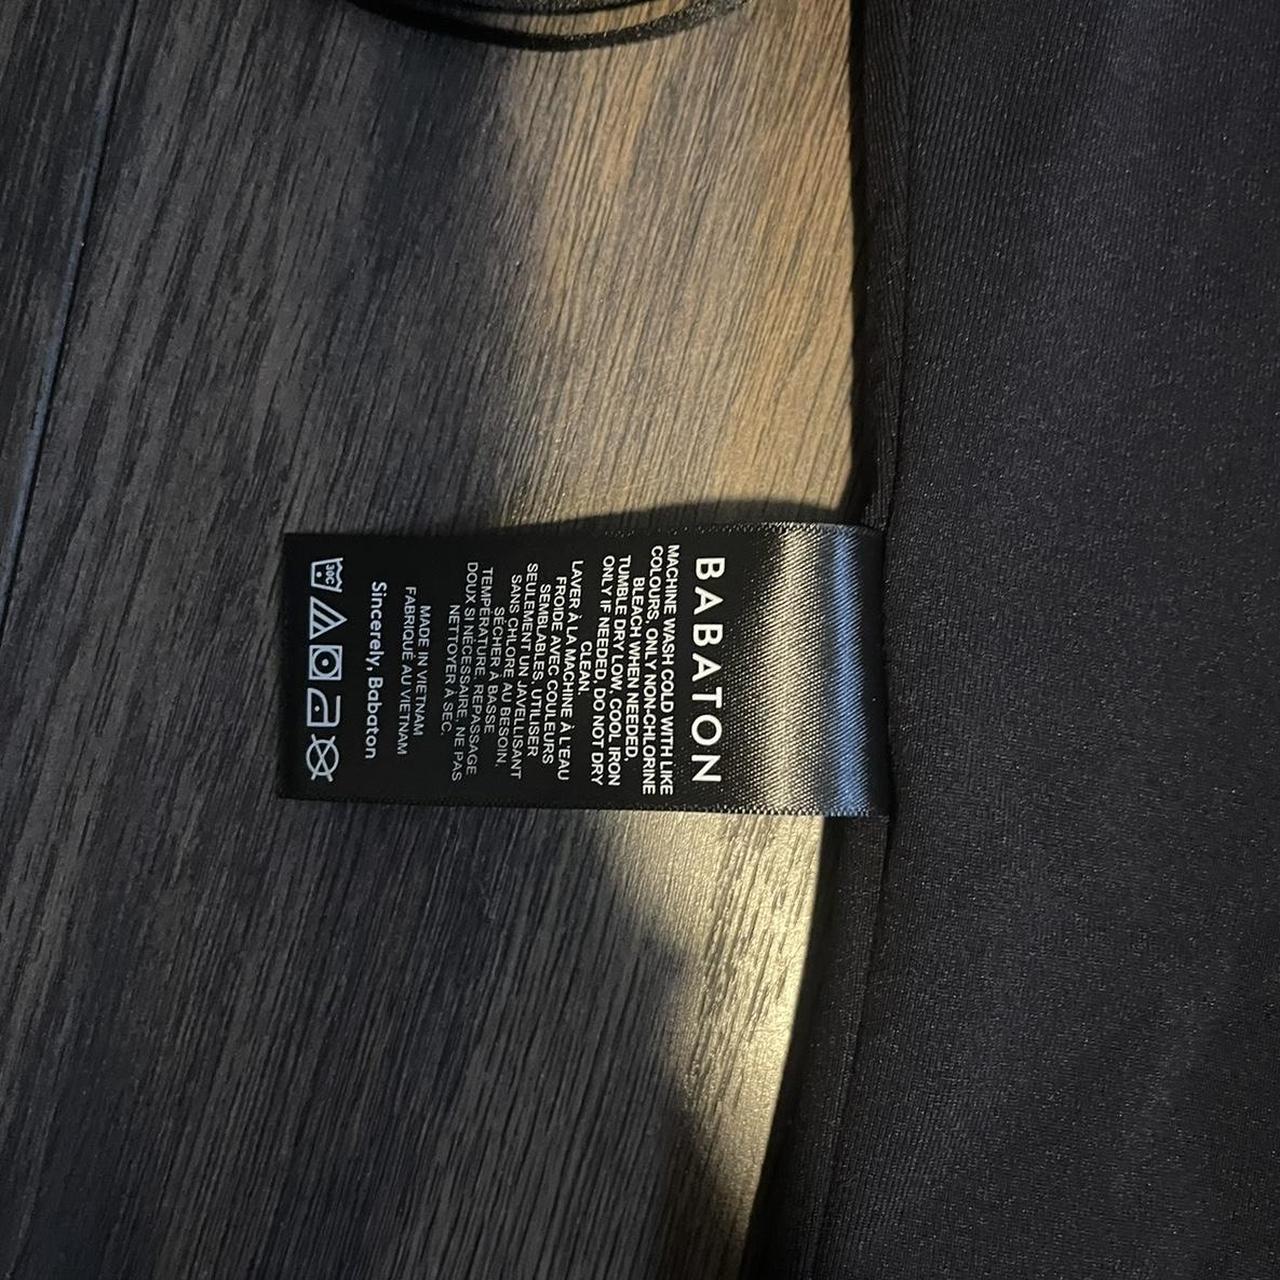 Contour Squareneck ShortSleeve Body Suit Size - Depop